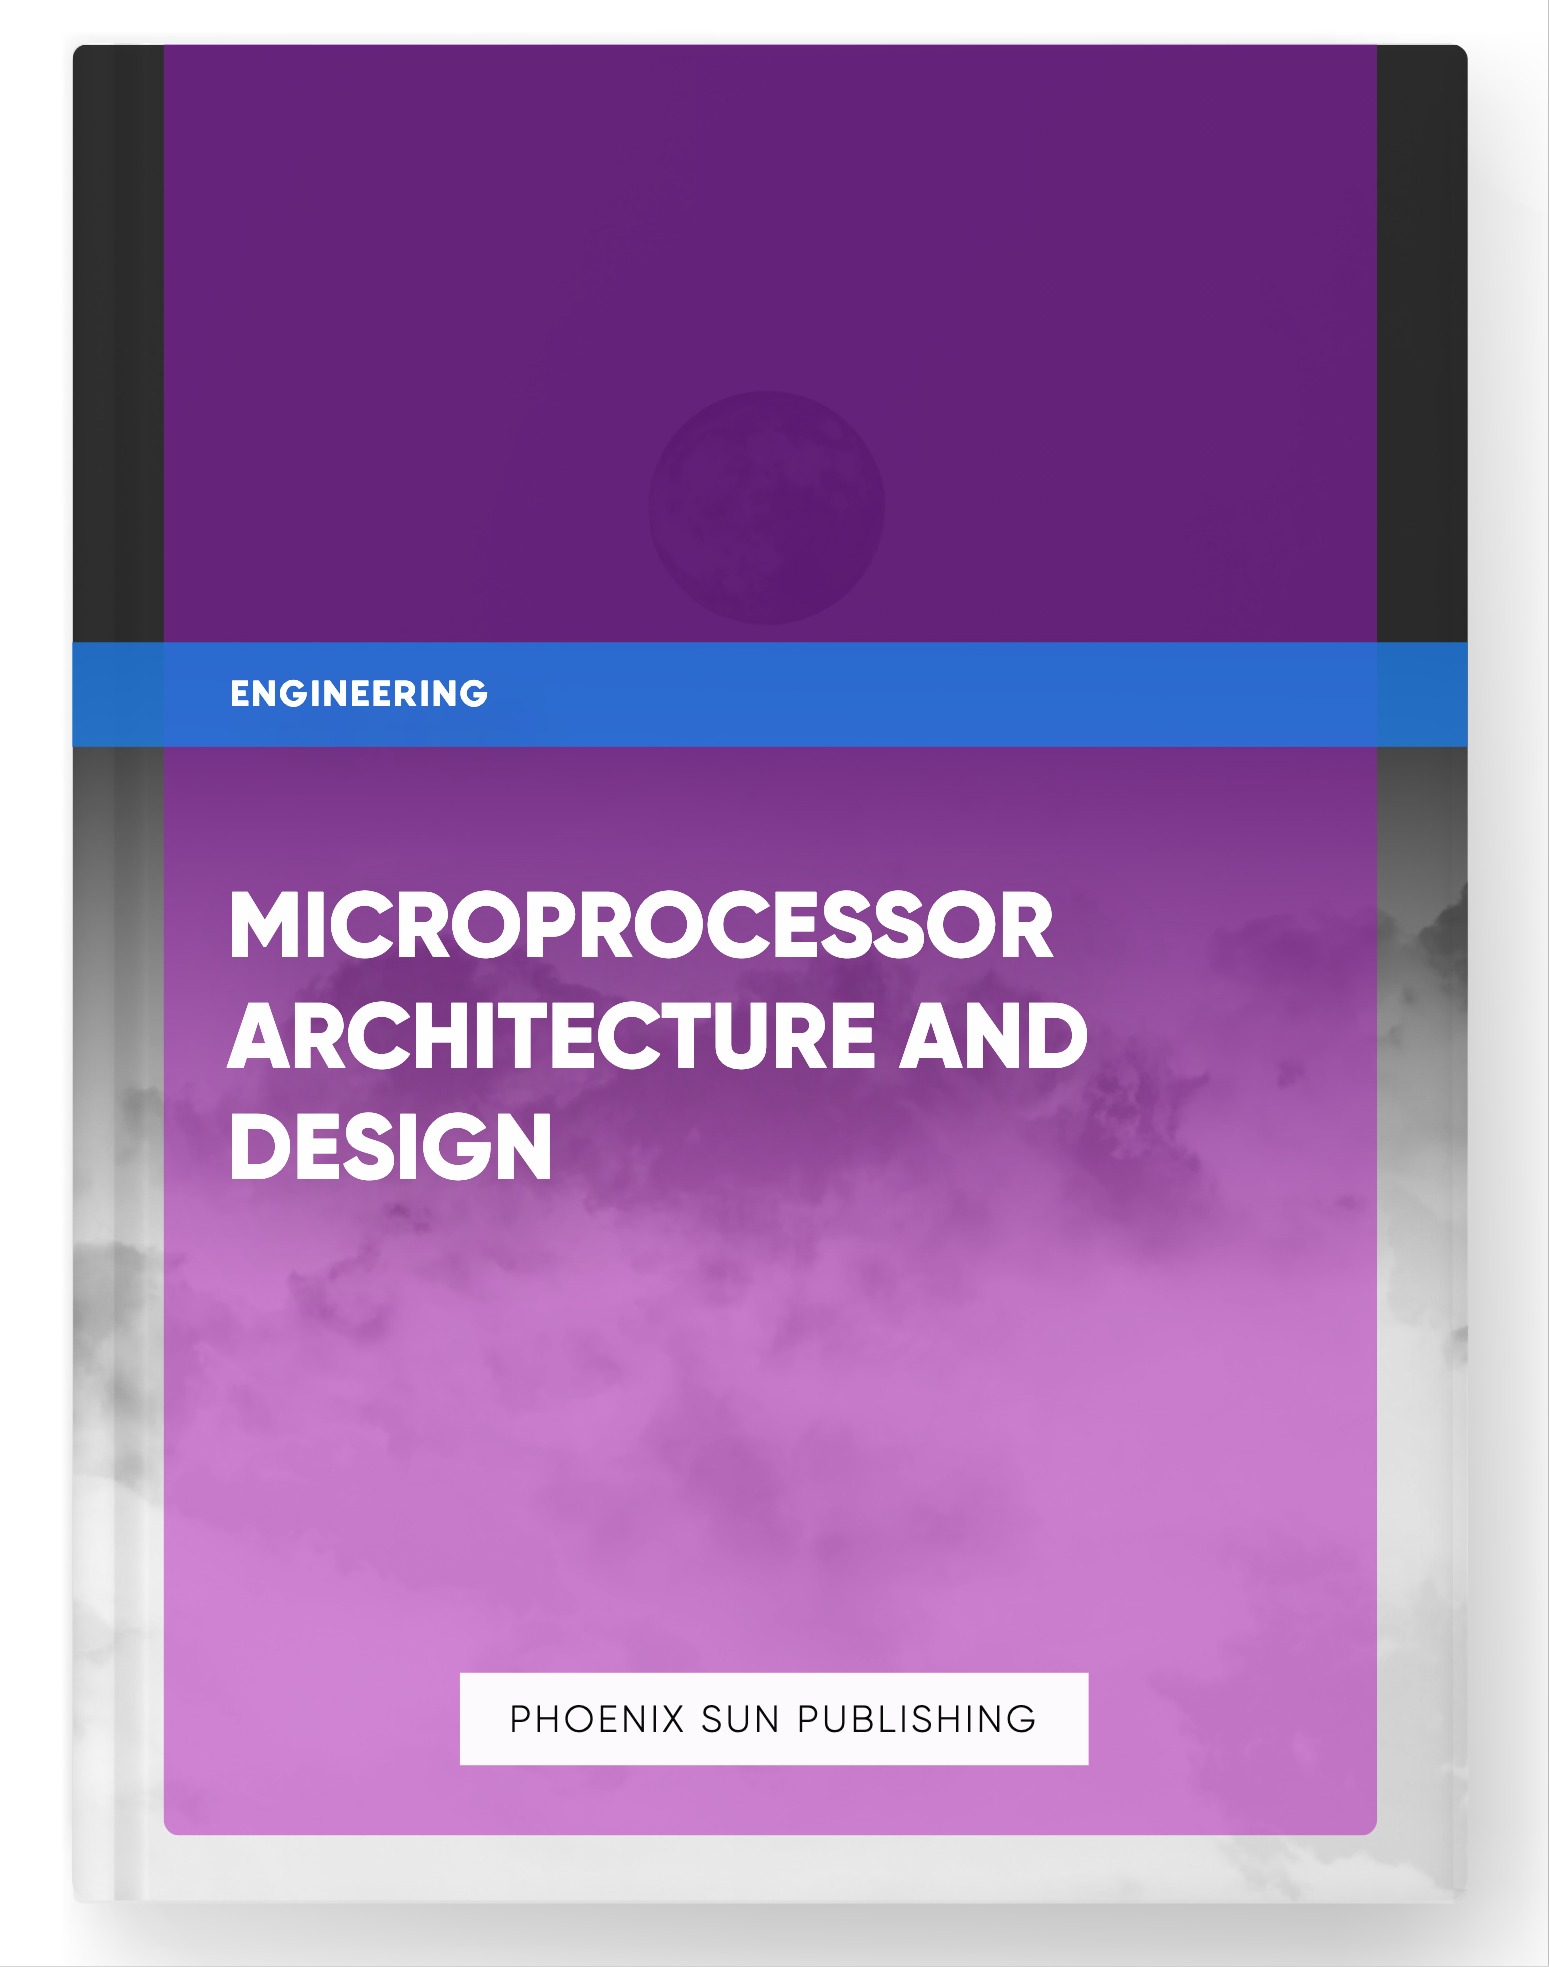 Microprocessor Architecture and Design